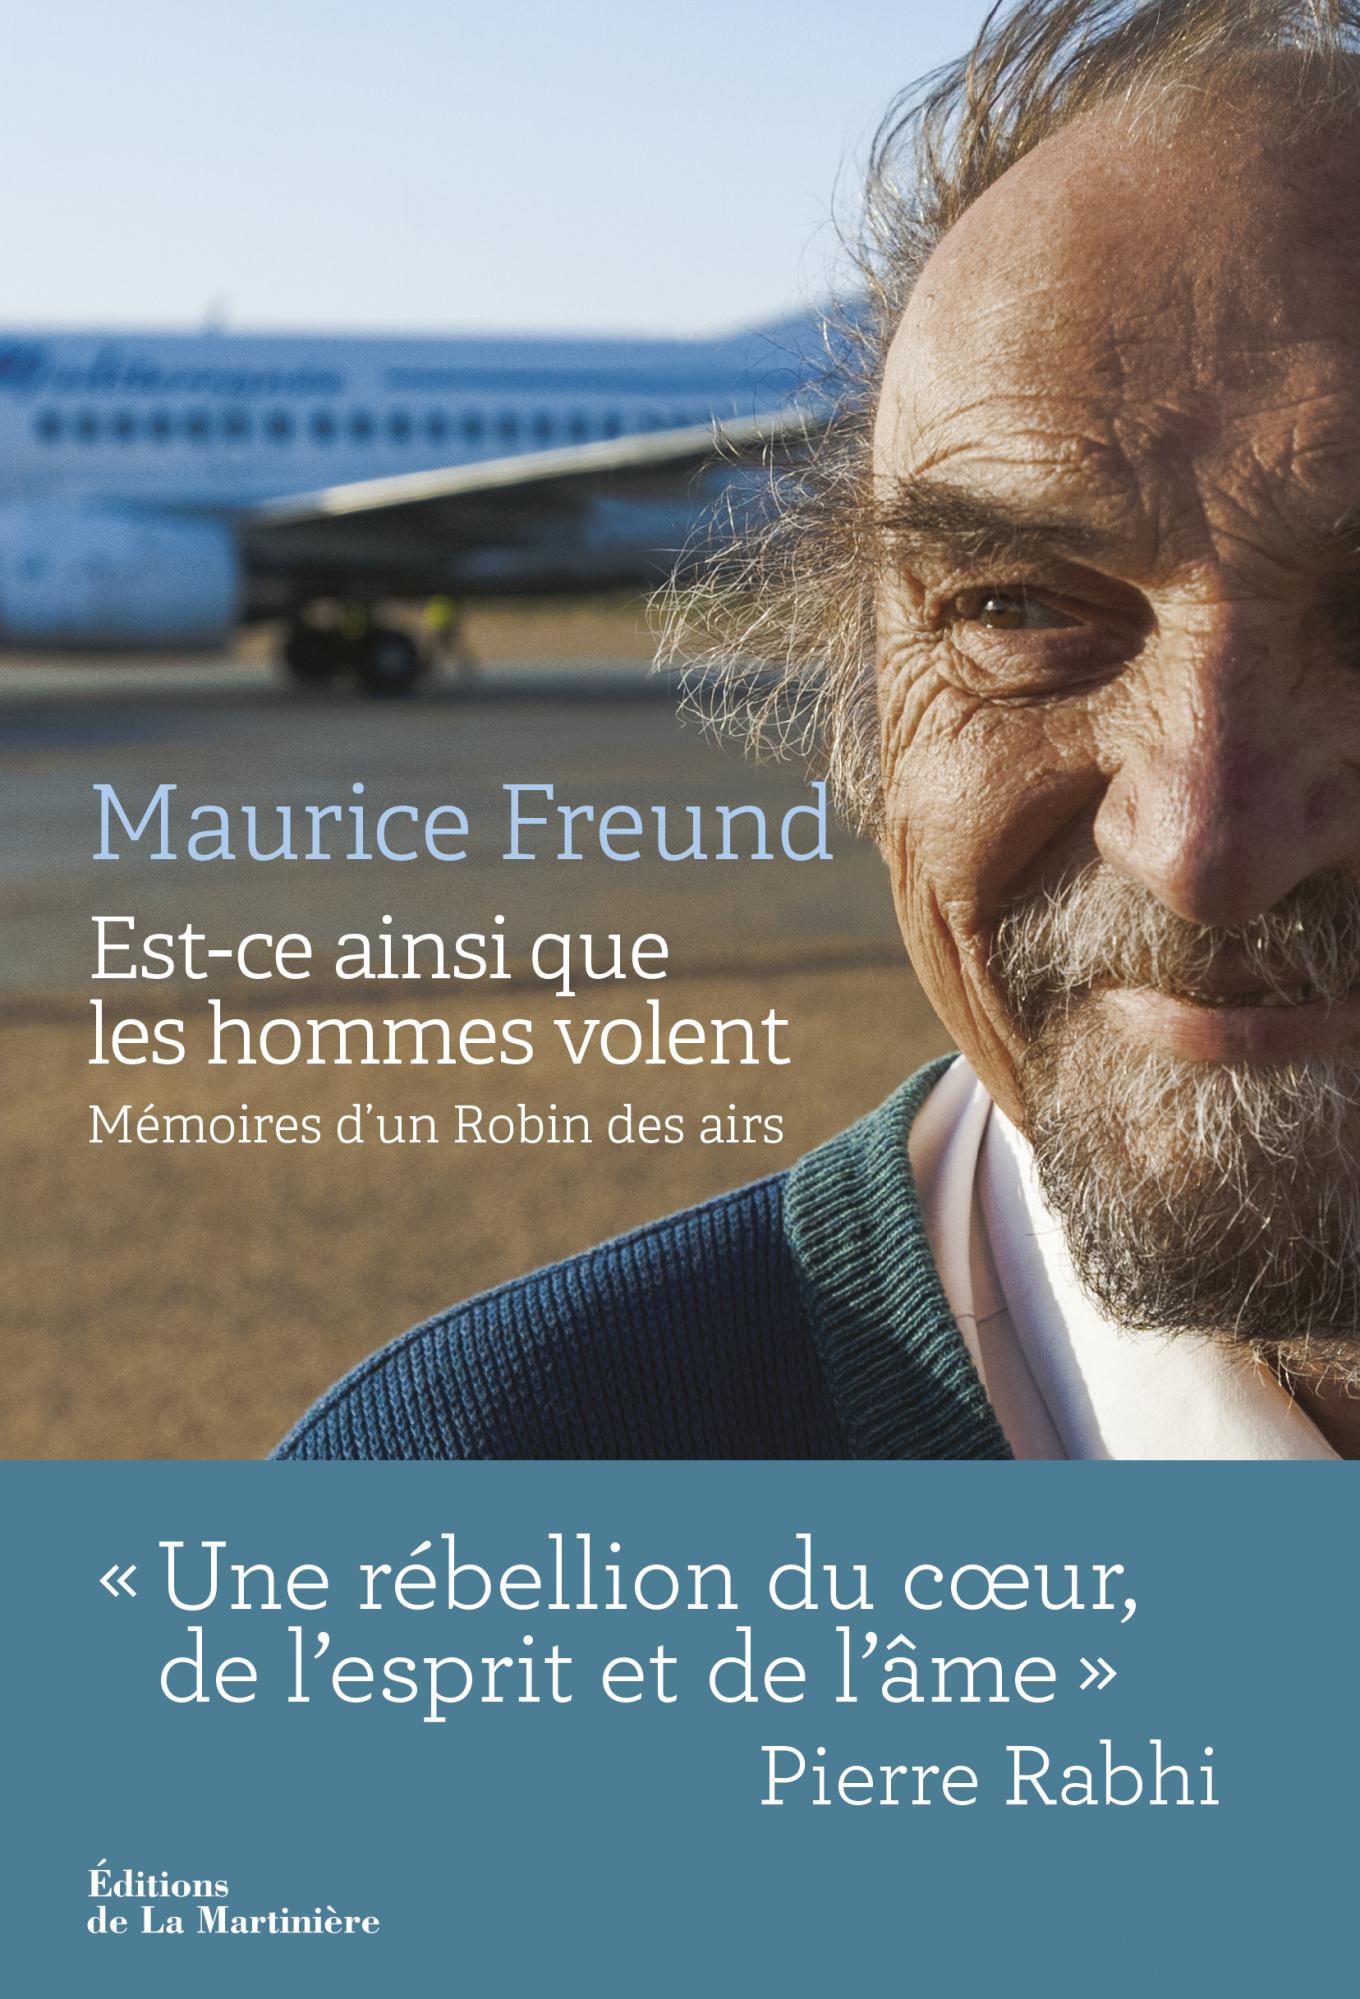 Les mémoires de Maurice Freund. DR